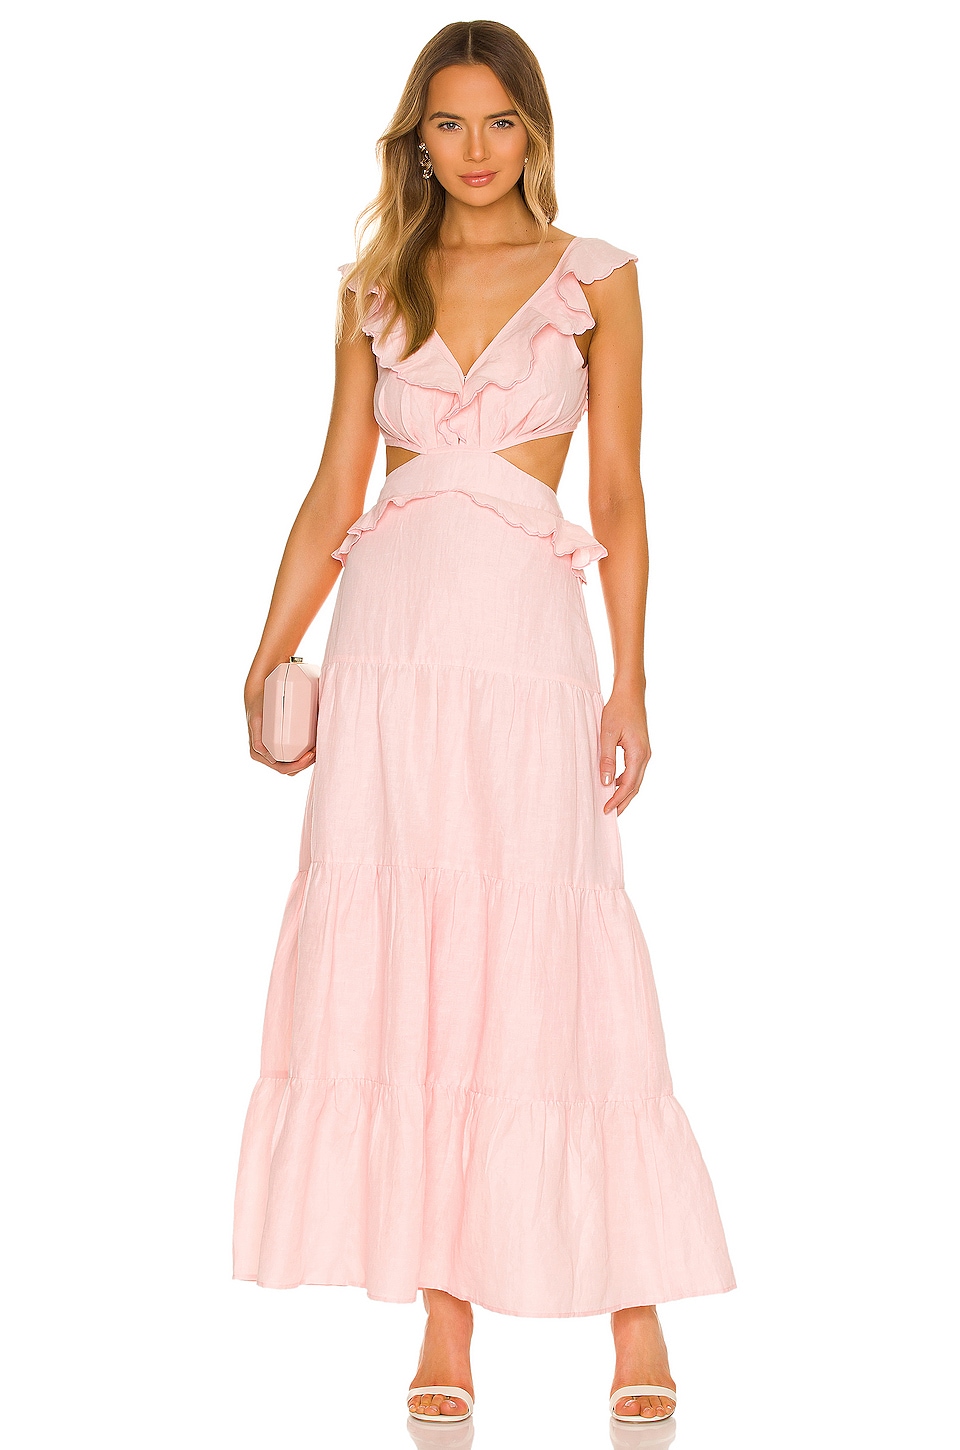 Karina Grimaldi Marigot Embellished Dress in Pink